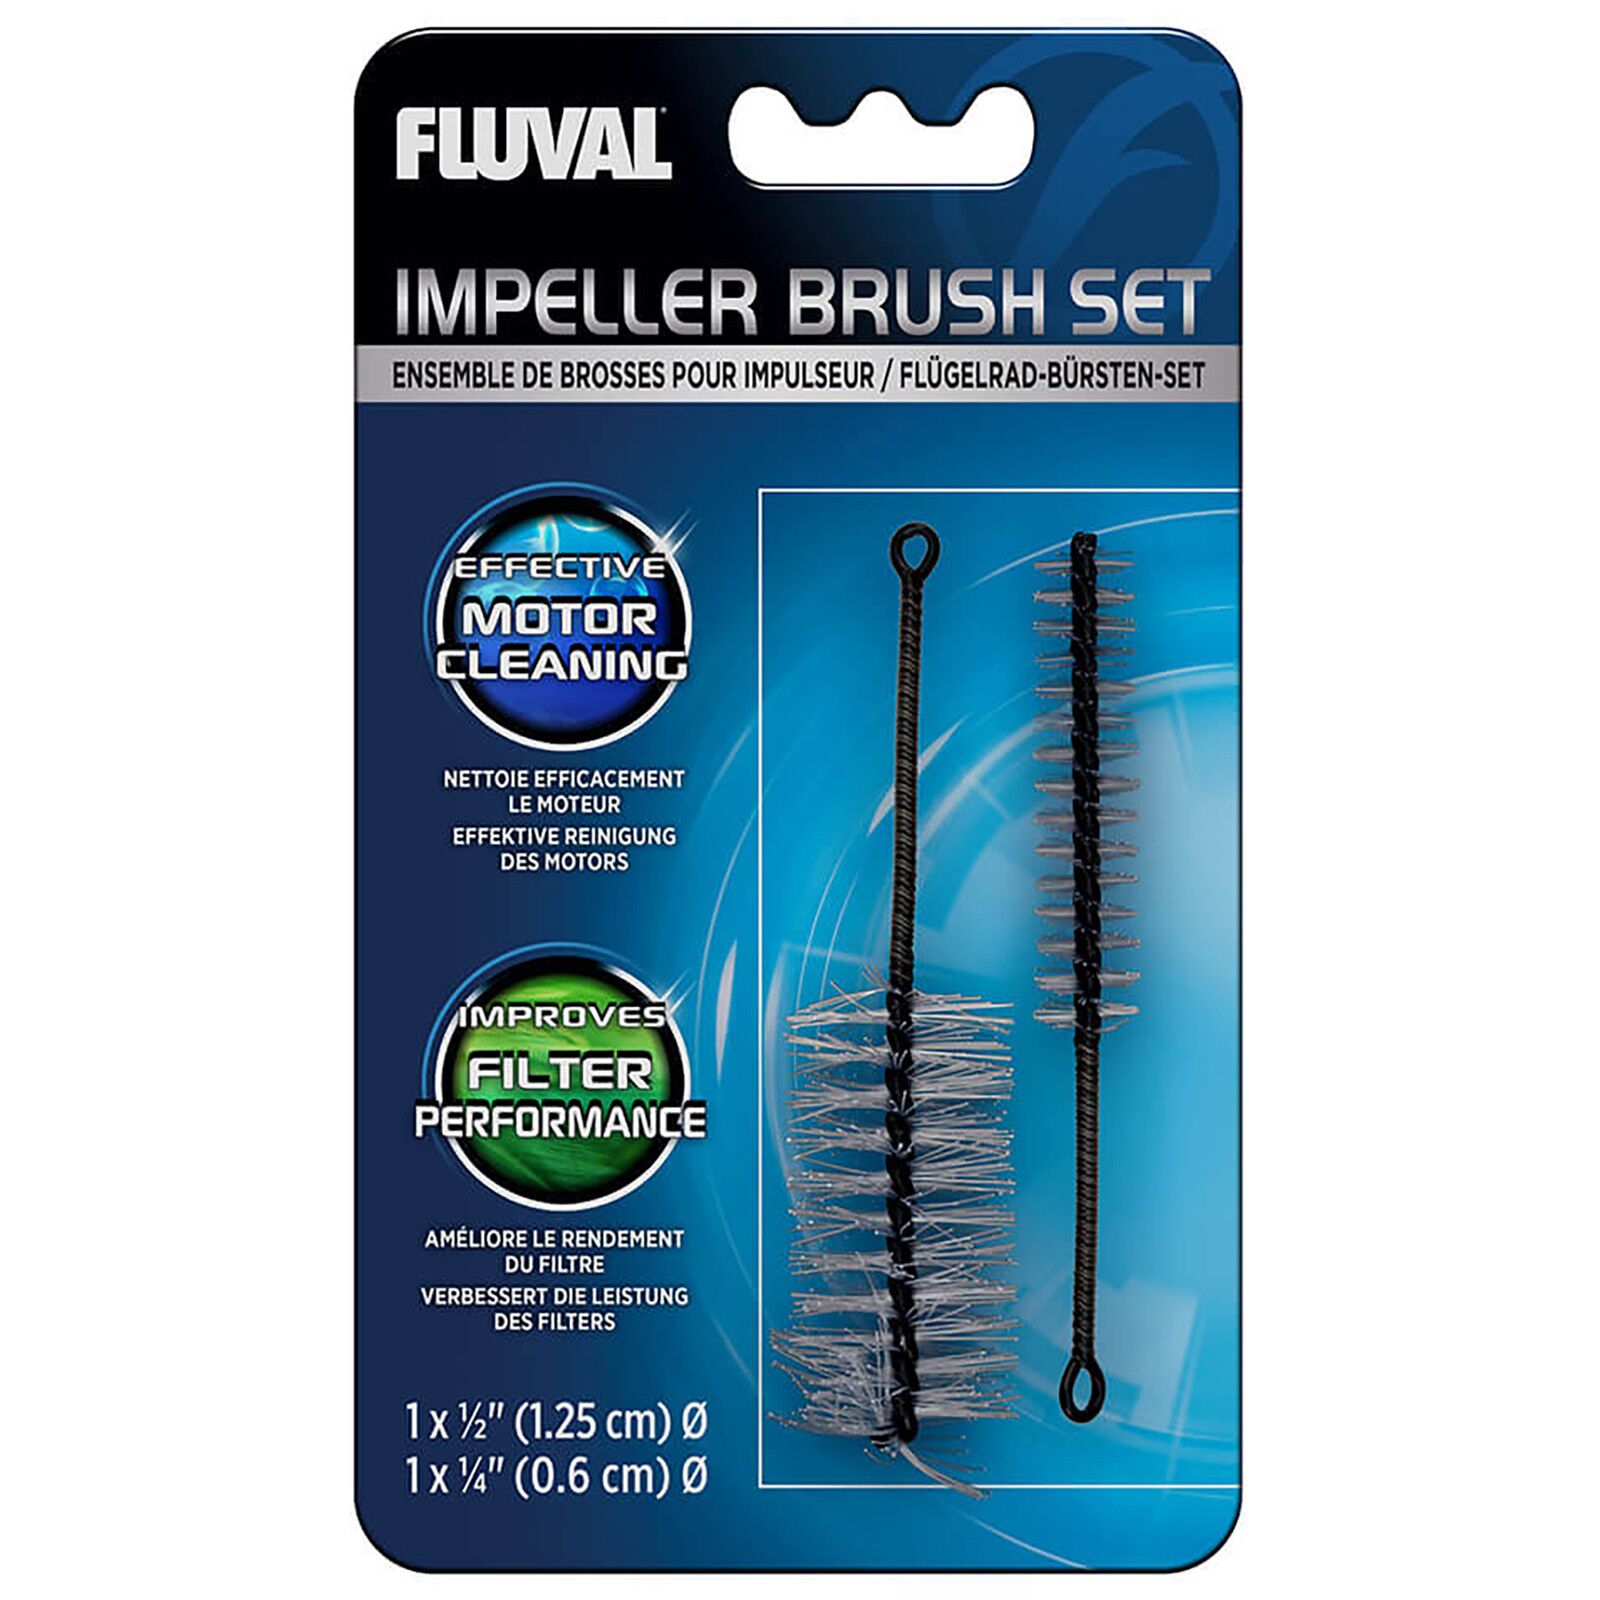 Fluval - Impeller Brush Set